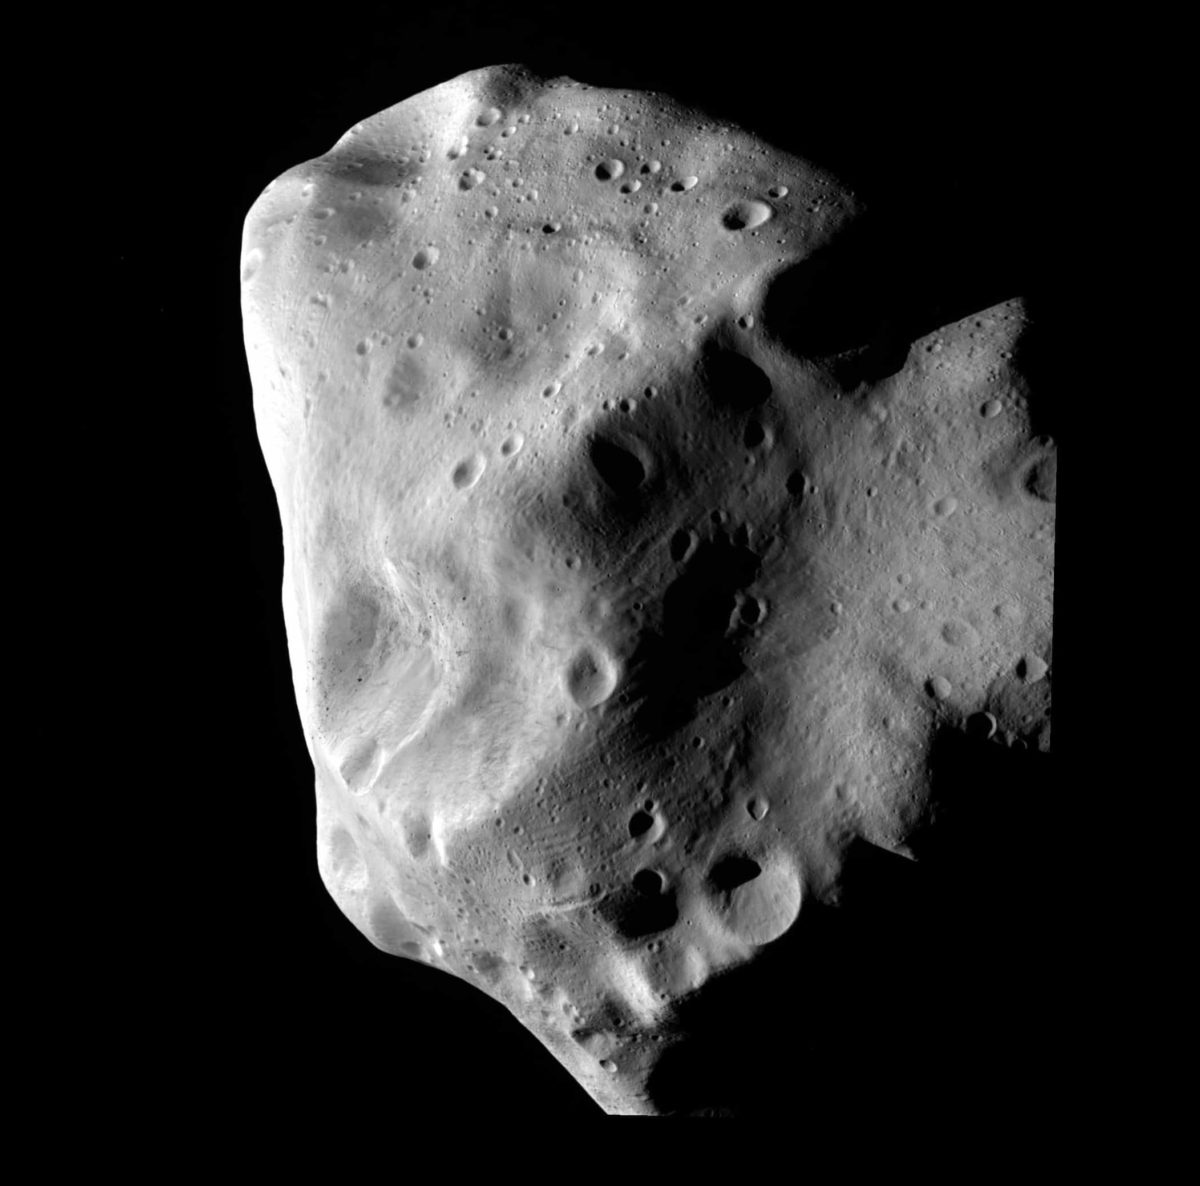 Asteroide apophis